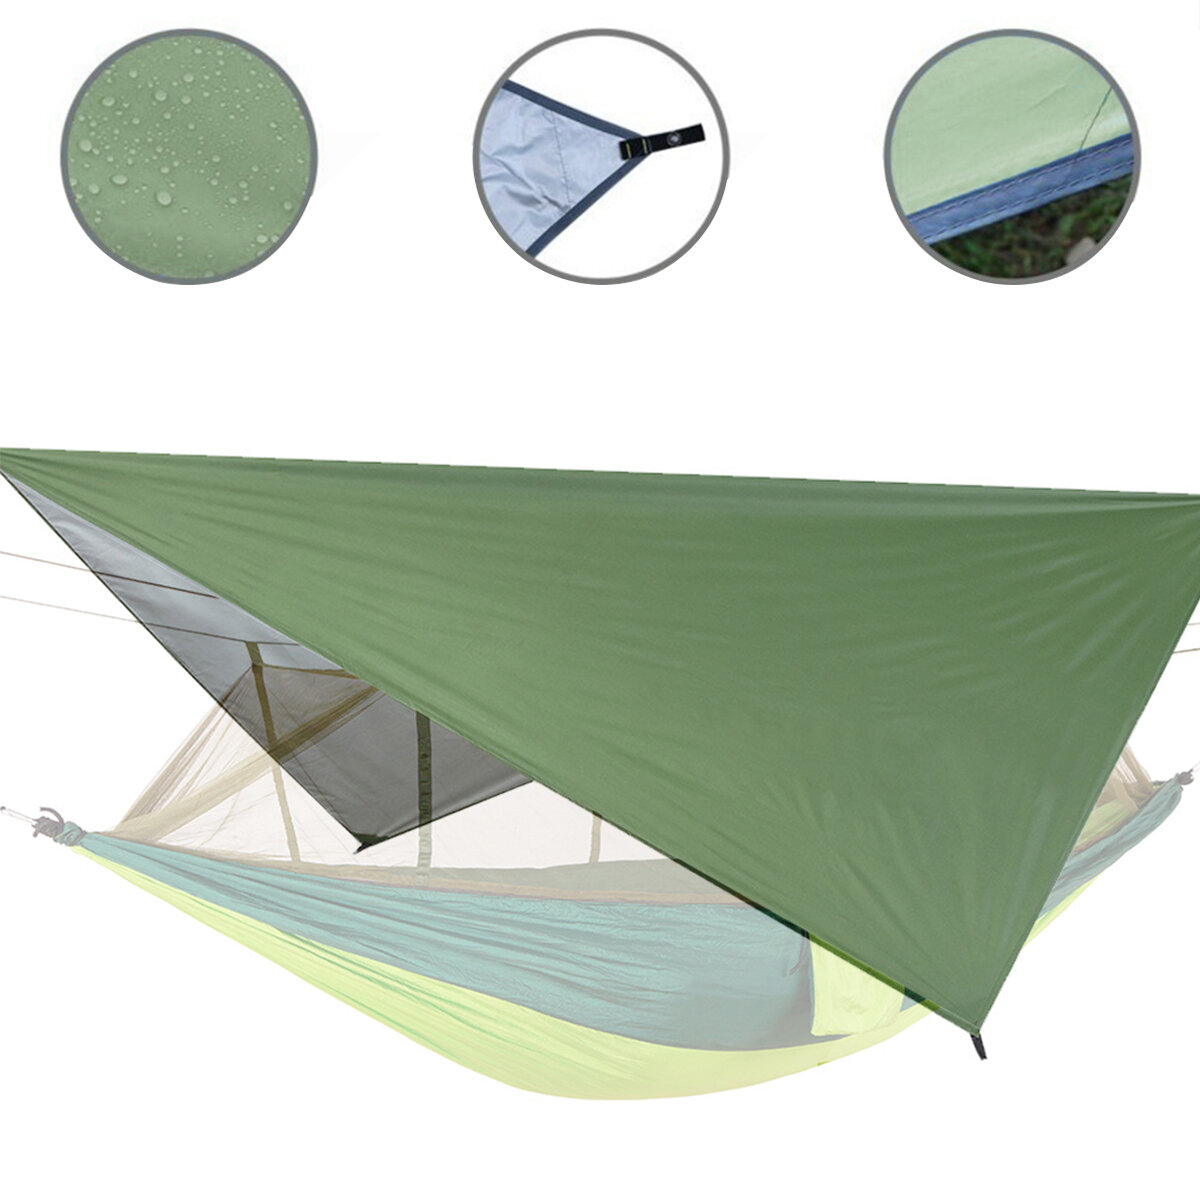 IPRee® Tendone da esterno per patio impermeabile da 122x122 pollici, tenda da campeggio e picnic, copertura multifunzionale per ombra solare